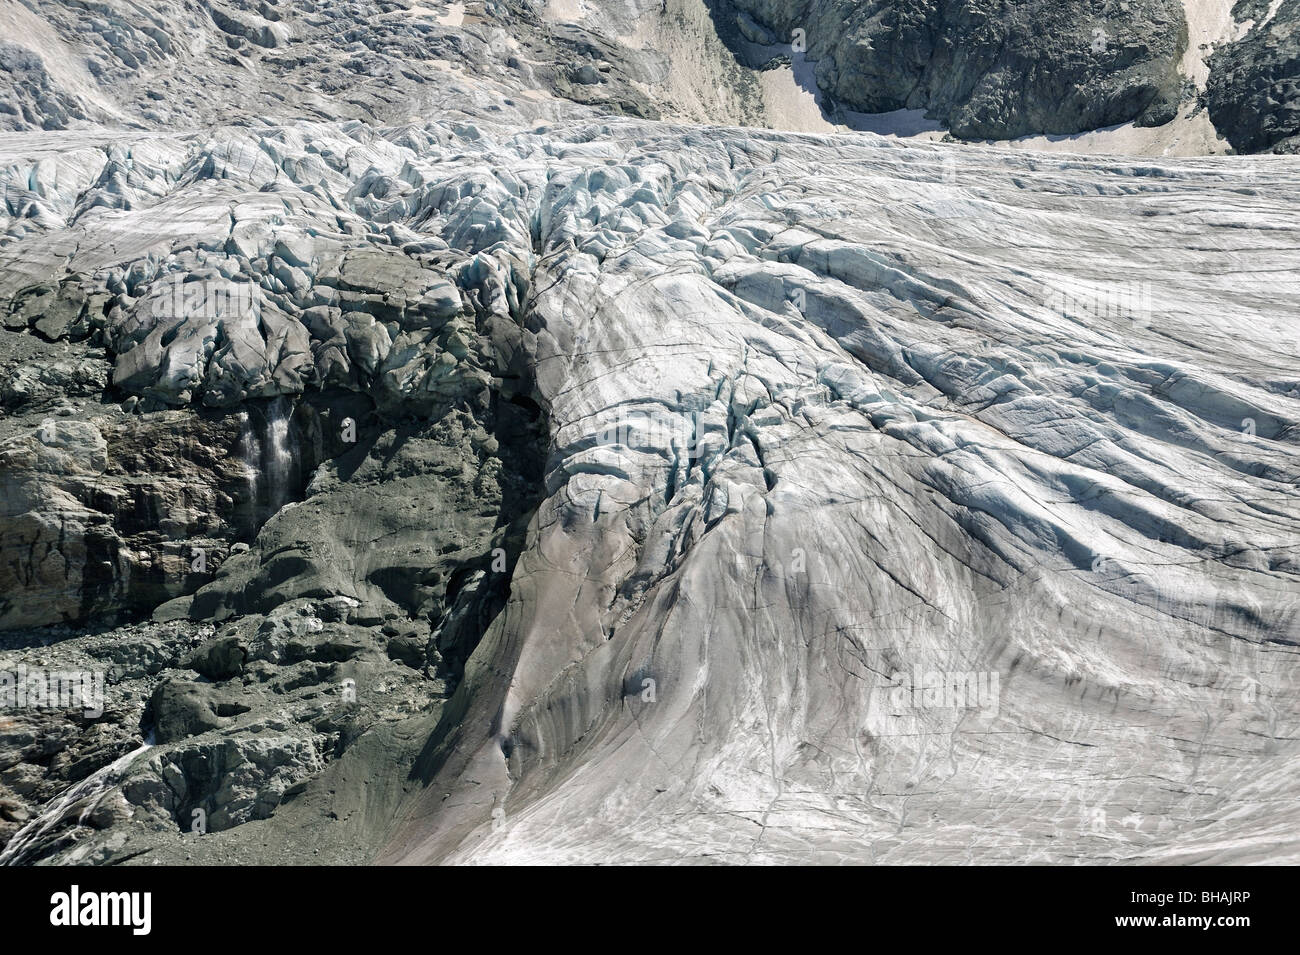 Crevasses on the Moiry Glacier in the Swiss Pennine Alps / Walliser Alpen, Valais / Wallis, Switzerland Stock Photo